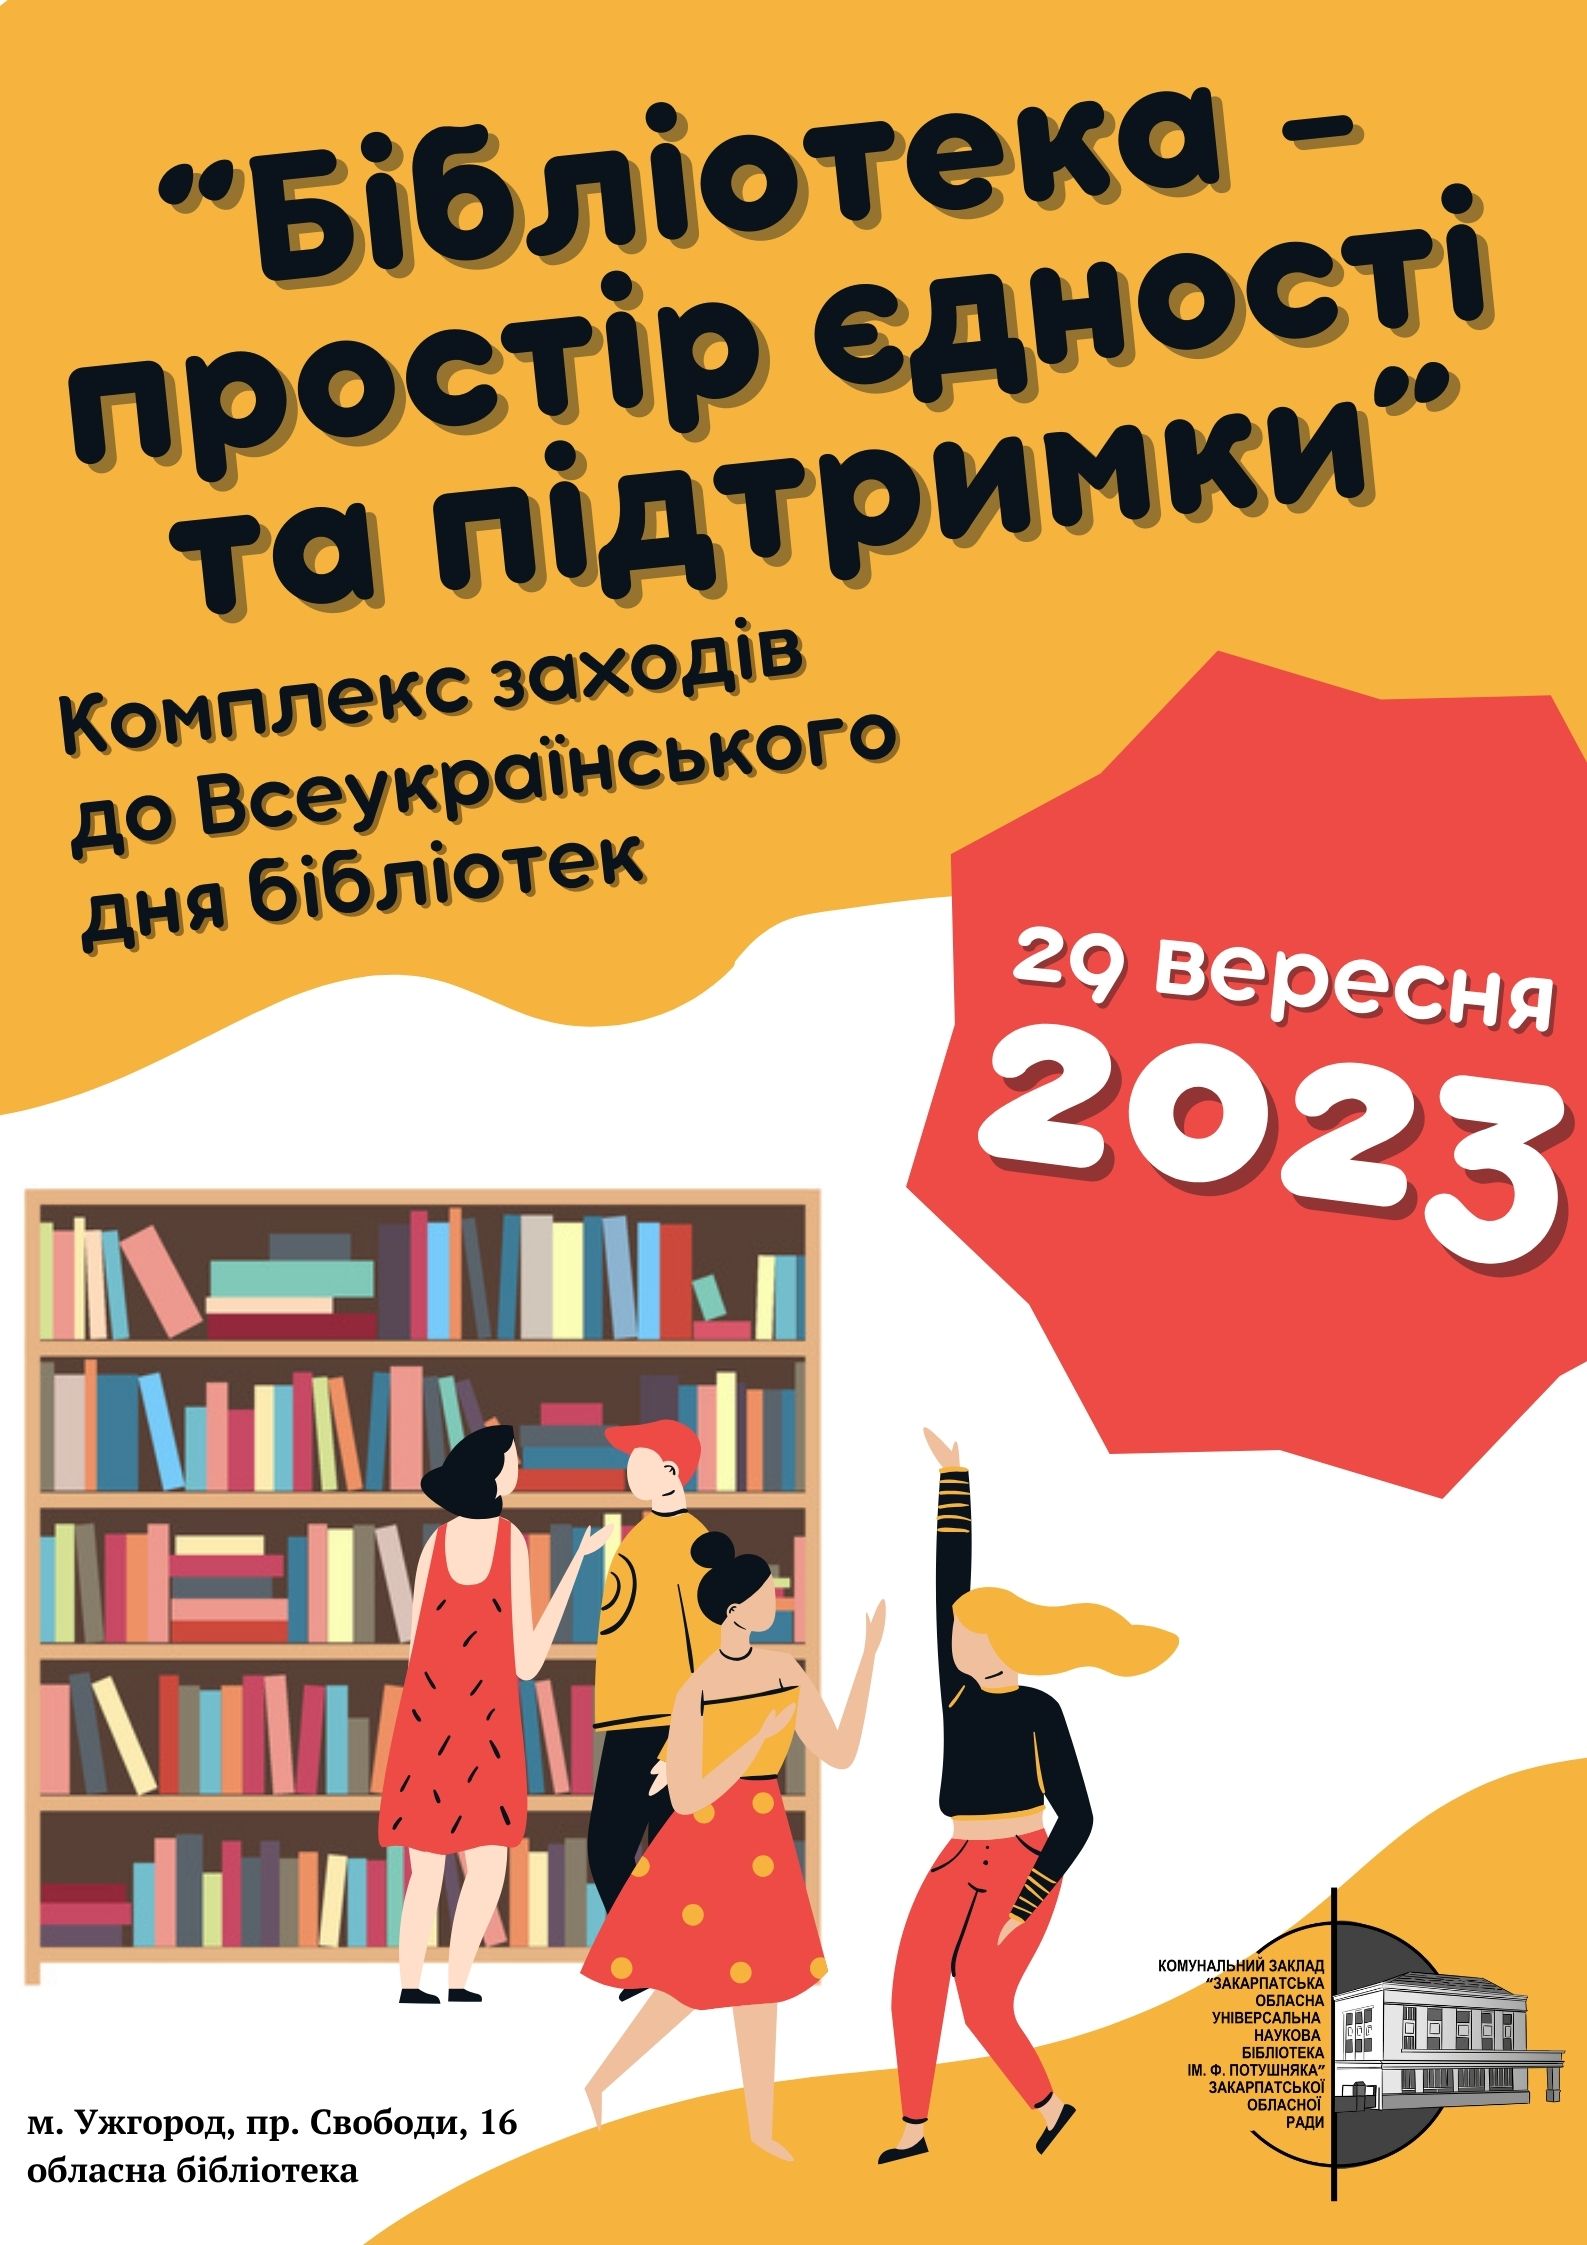 В Ужгороді пройдуть заходи обласної книгозбірні до Всеукраїнського дня бібліотек 